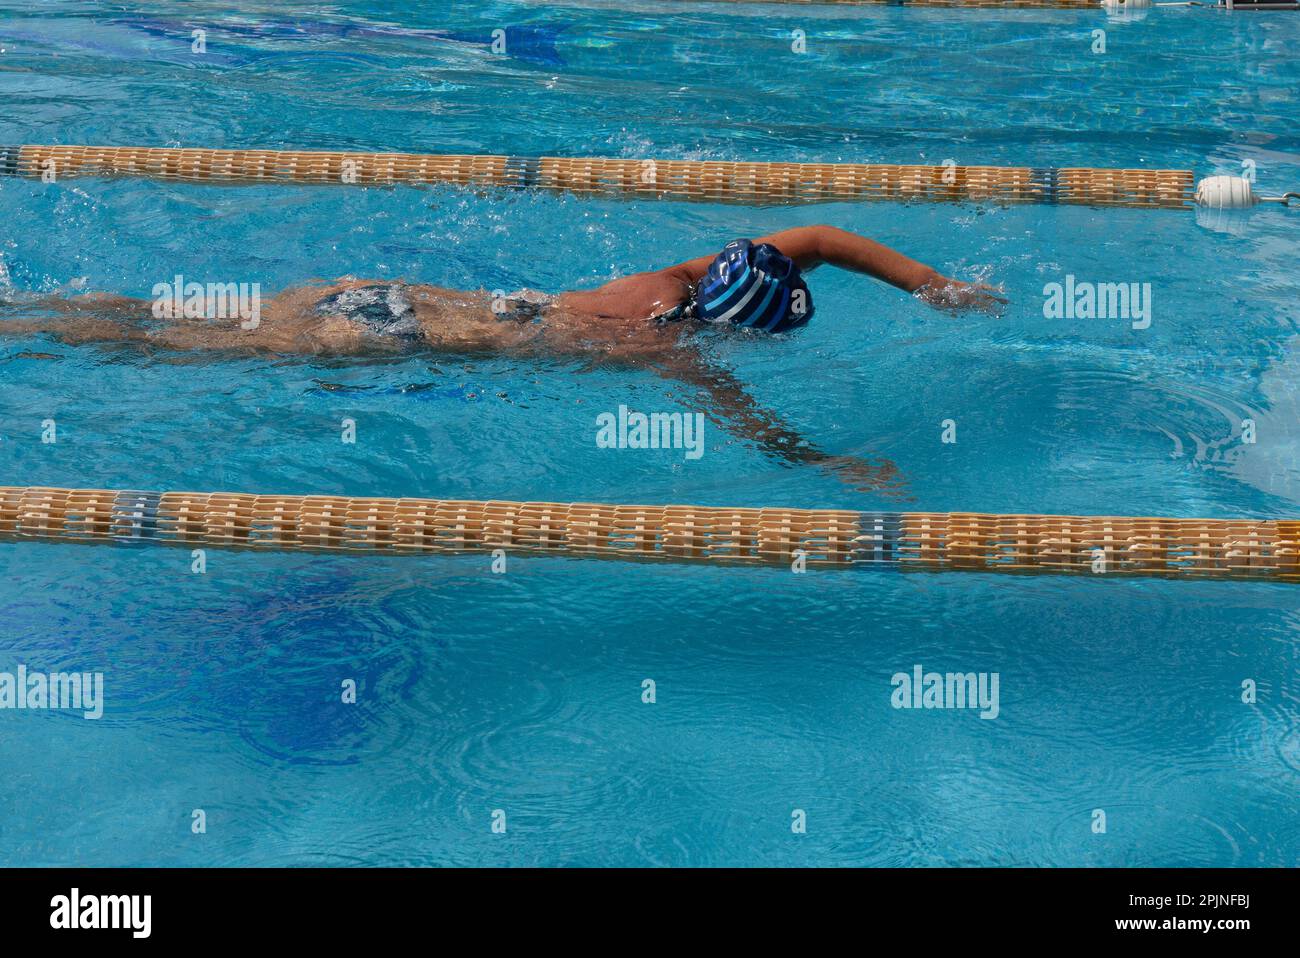 a woman in a bikini swims in the pool Stock Photo